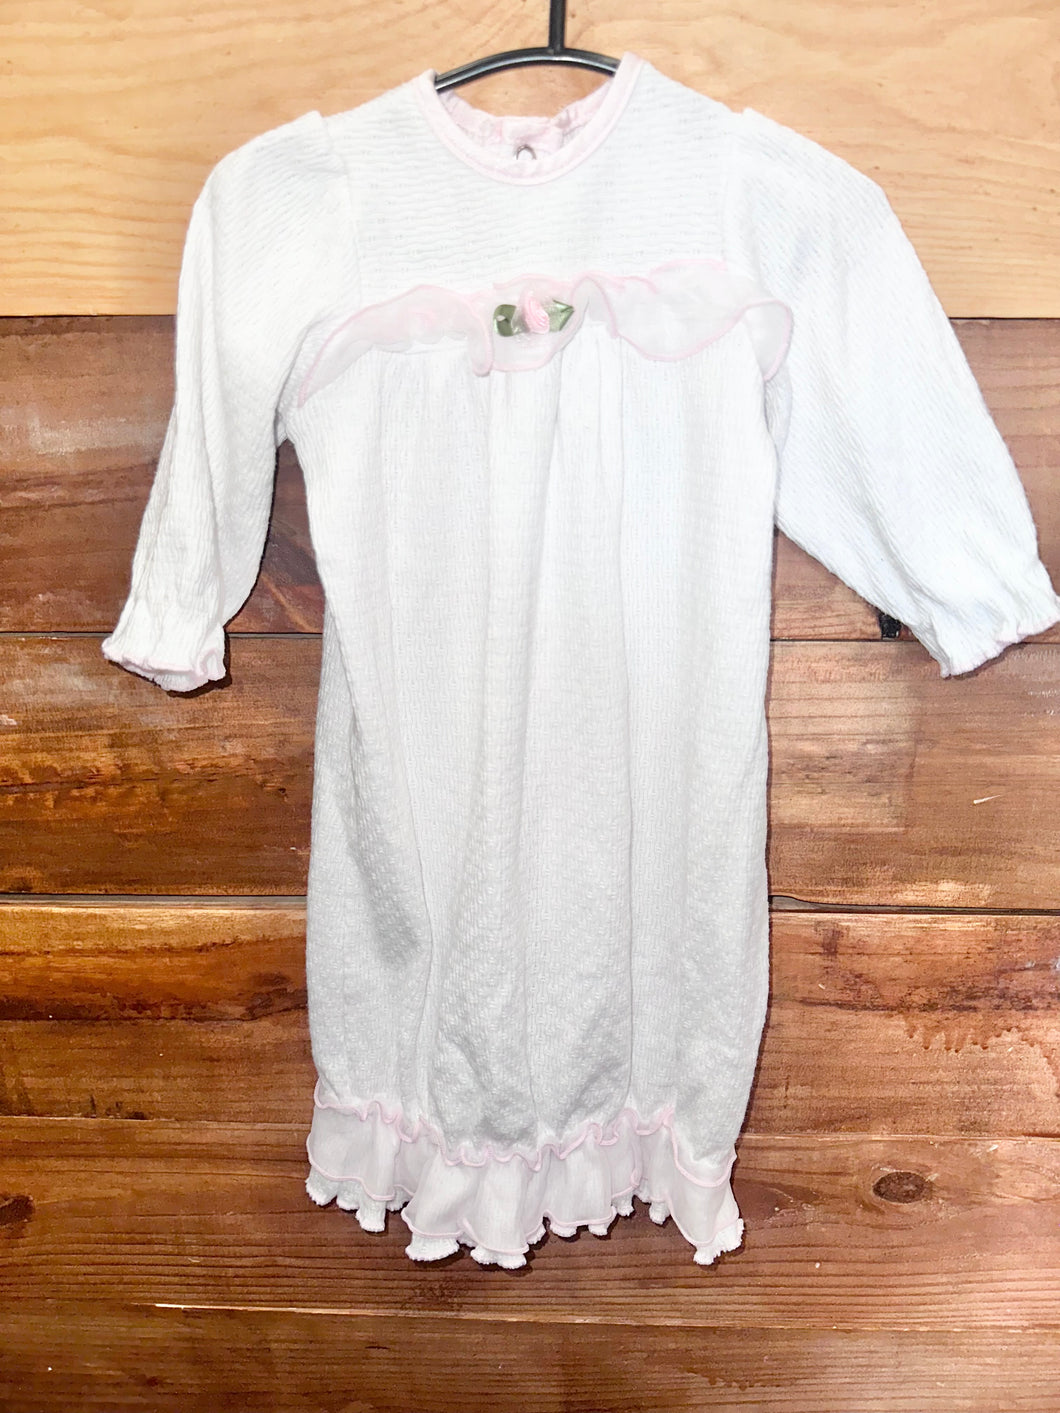 Little Zazzy White & Pink Gown Size Newborn